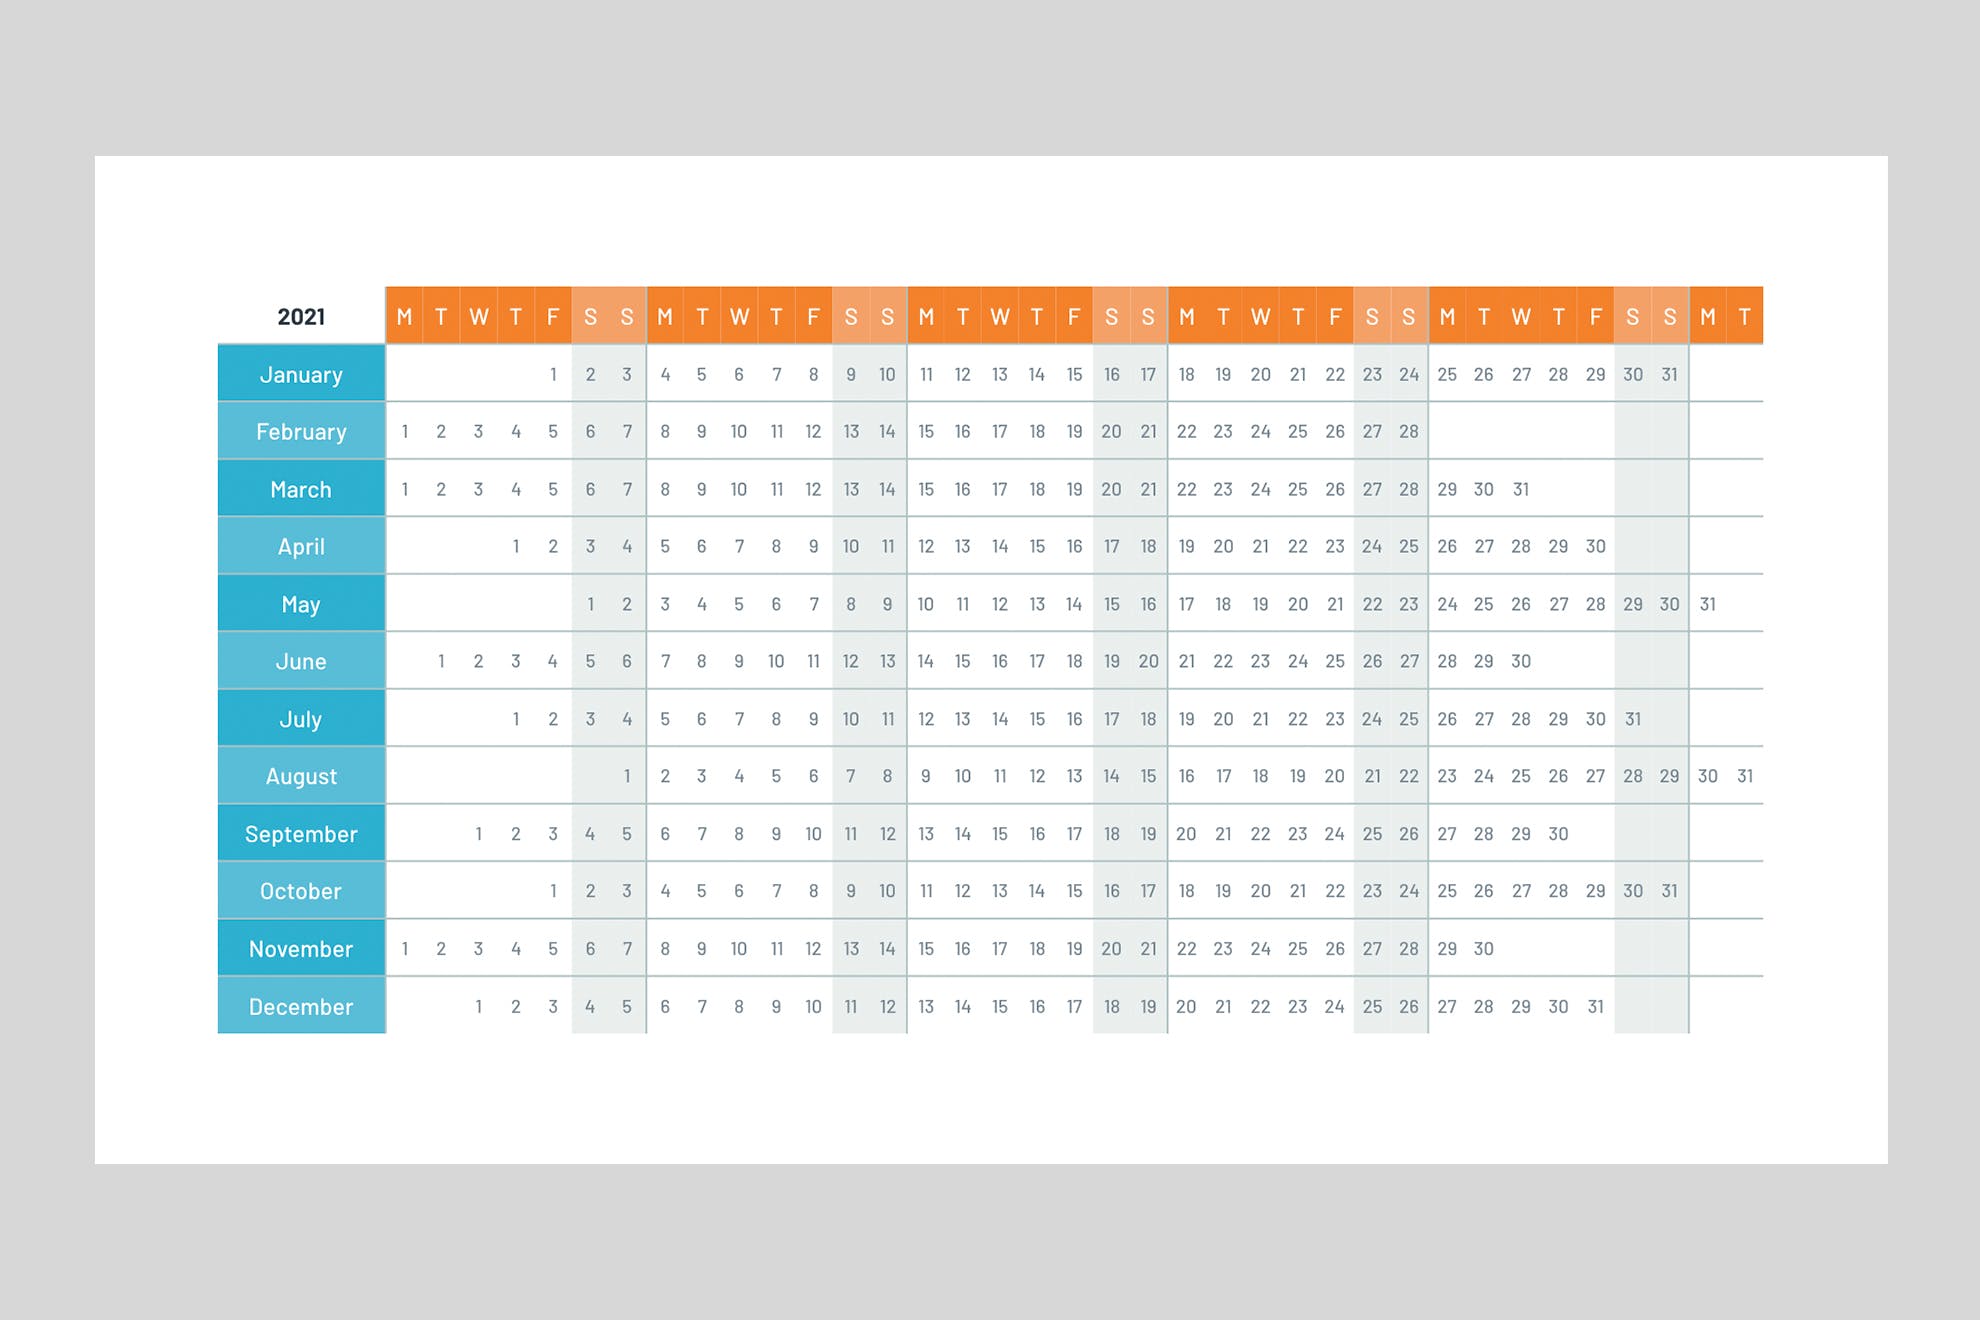 Chèn lịch vào Powerpoint - Các mẫu template lịch cho Powerpoint 5